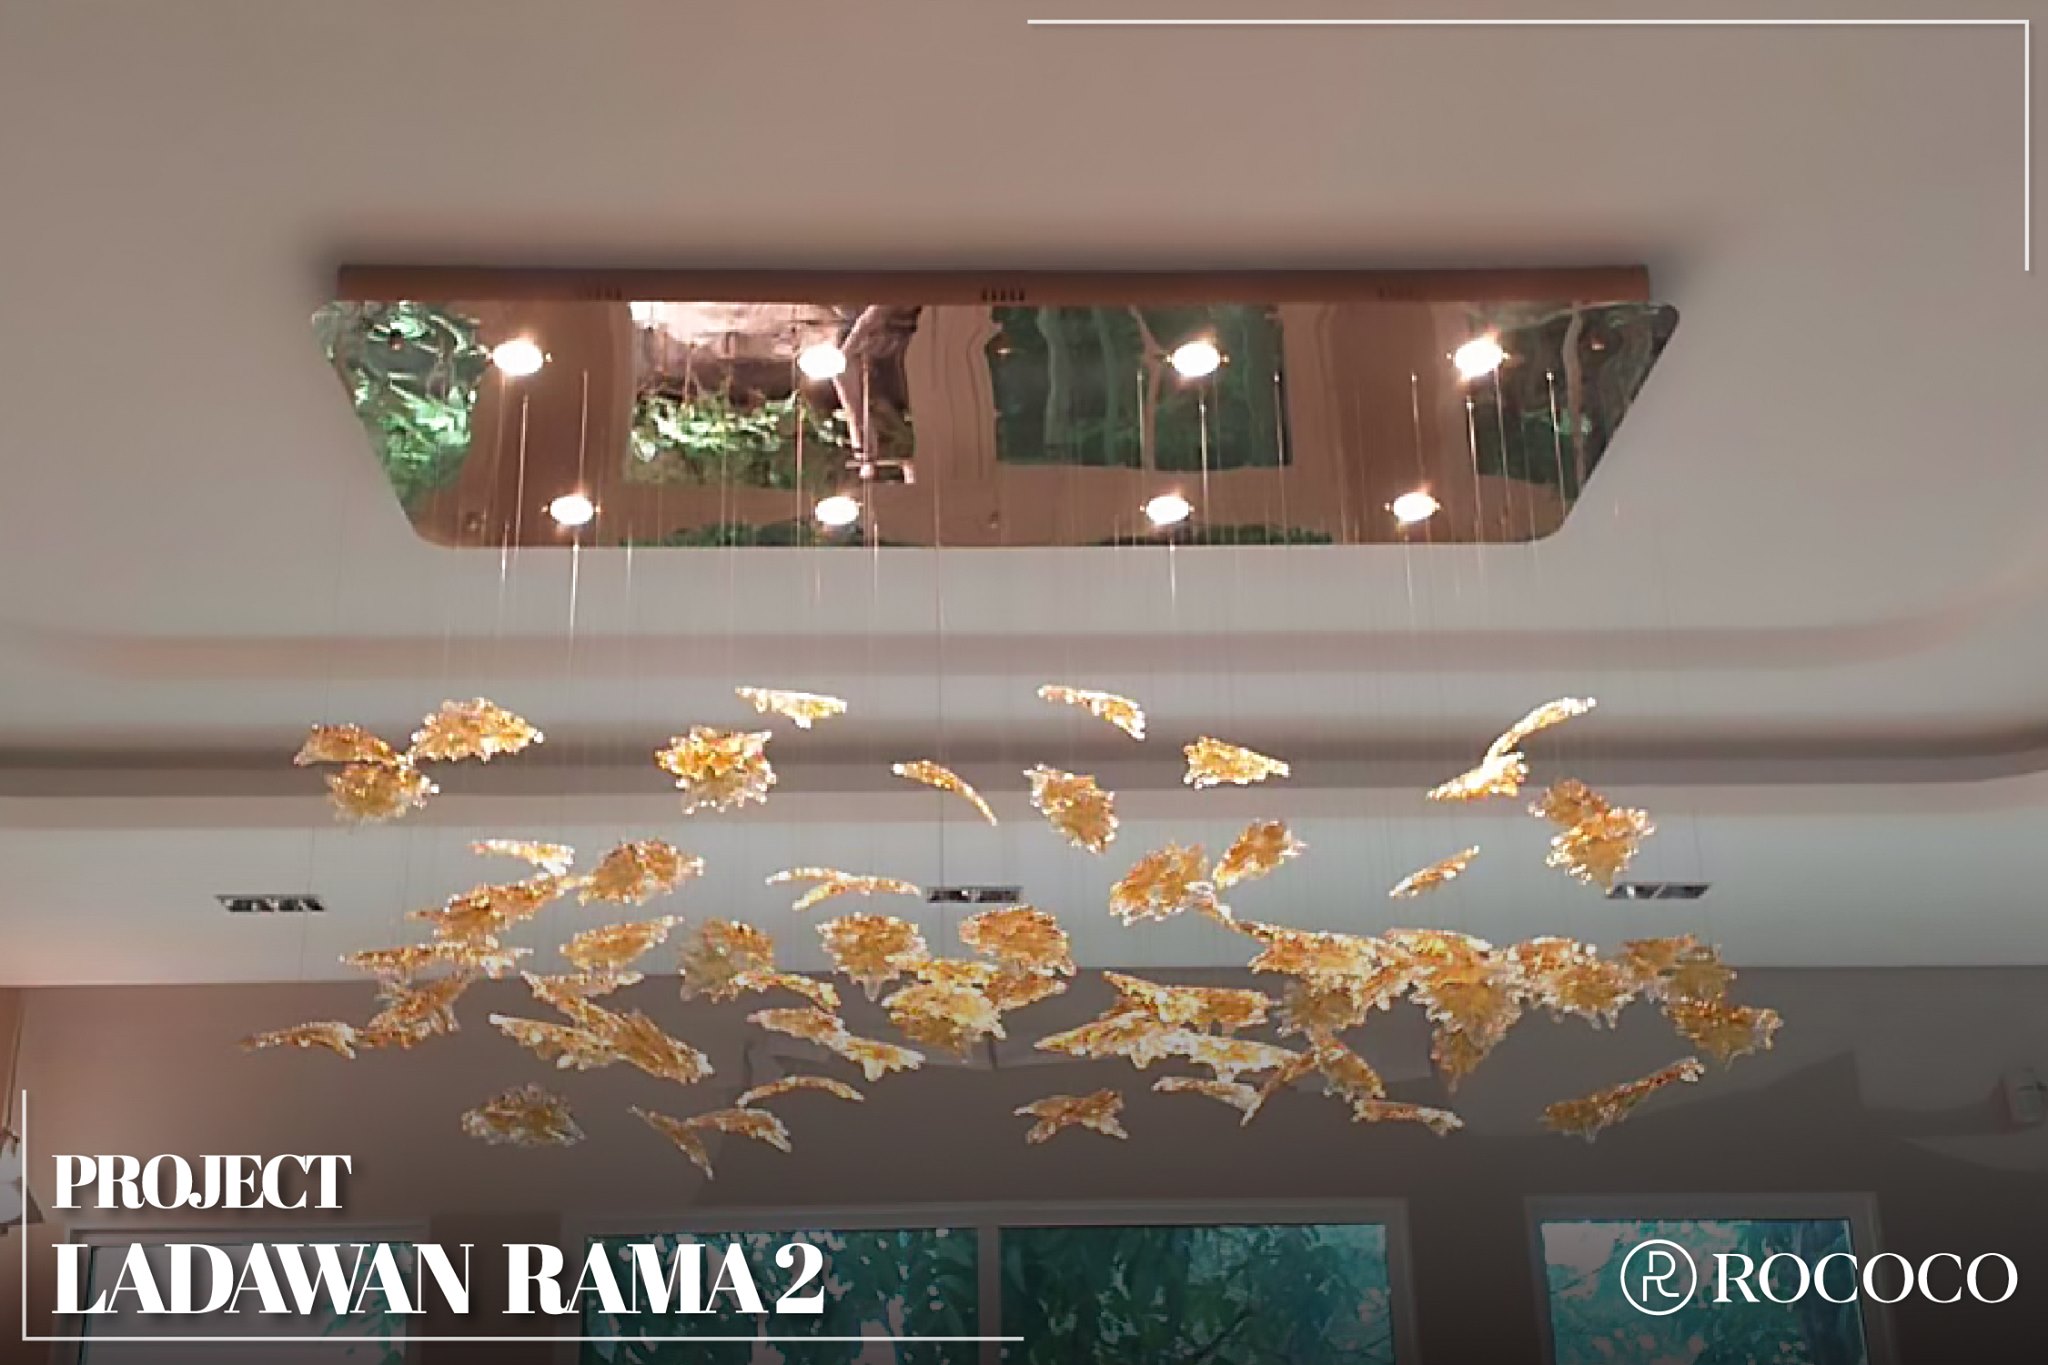 Project: LADAWAN RAMA2